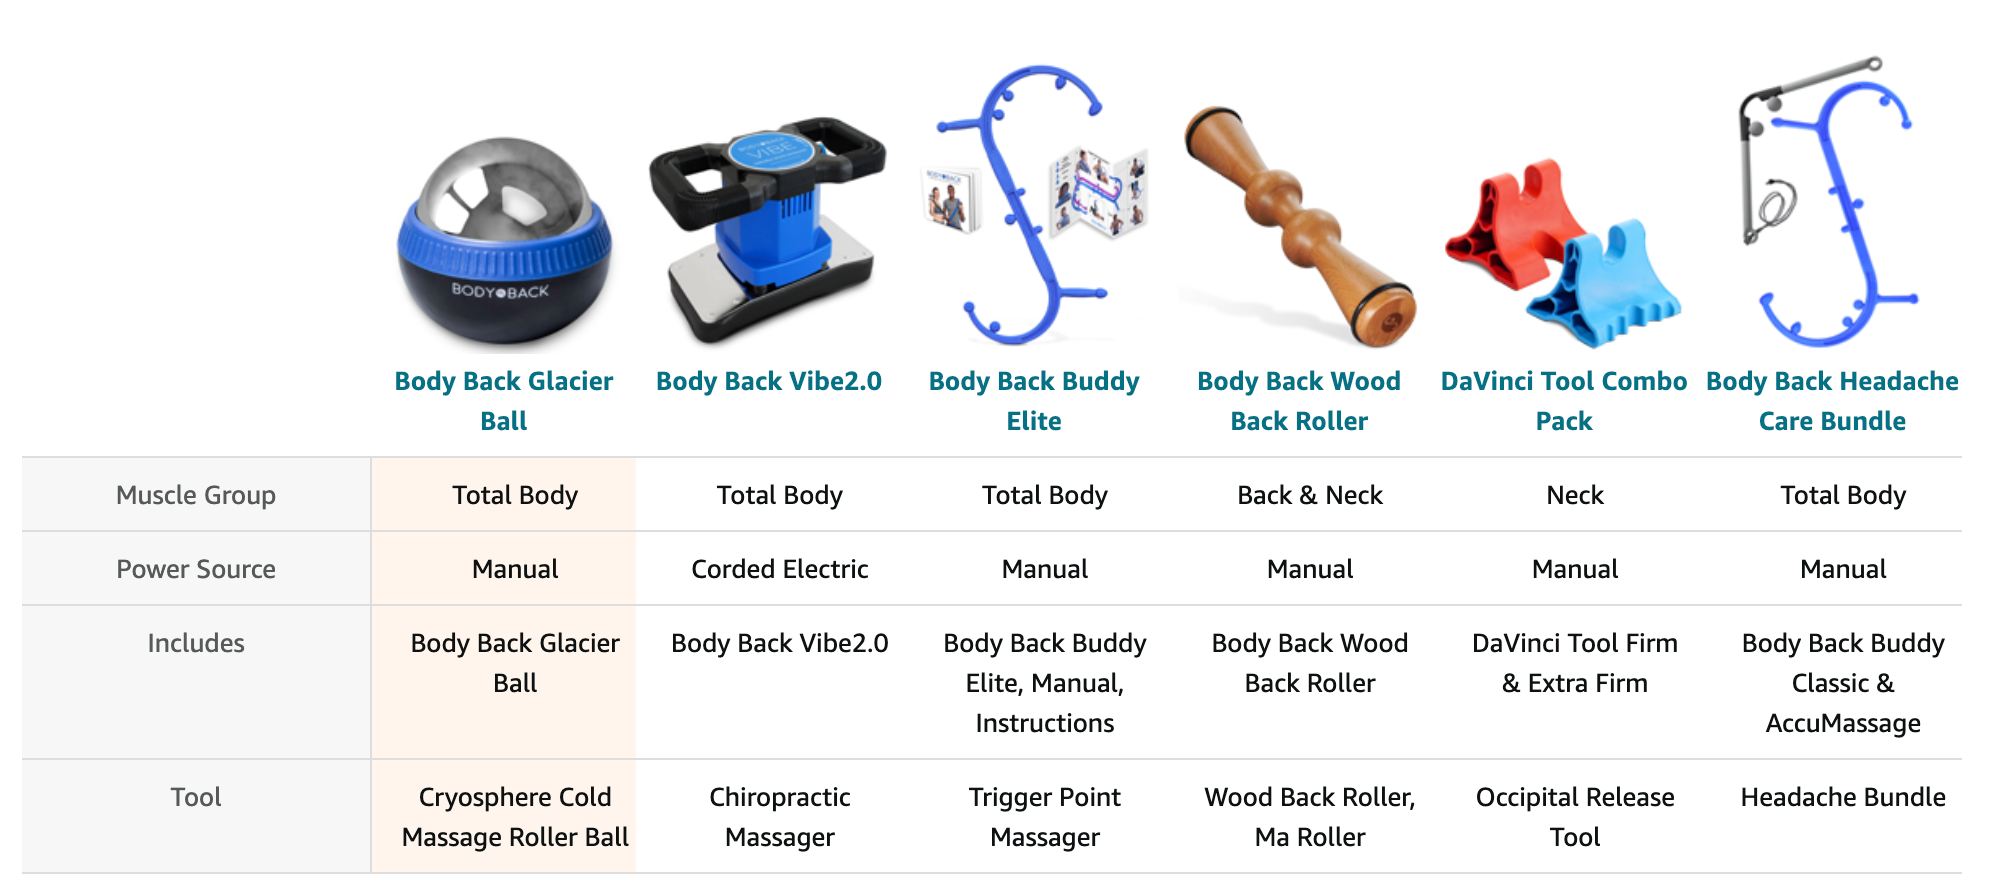 Comparison chart for glacier massager roller cold massage roller ball